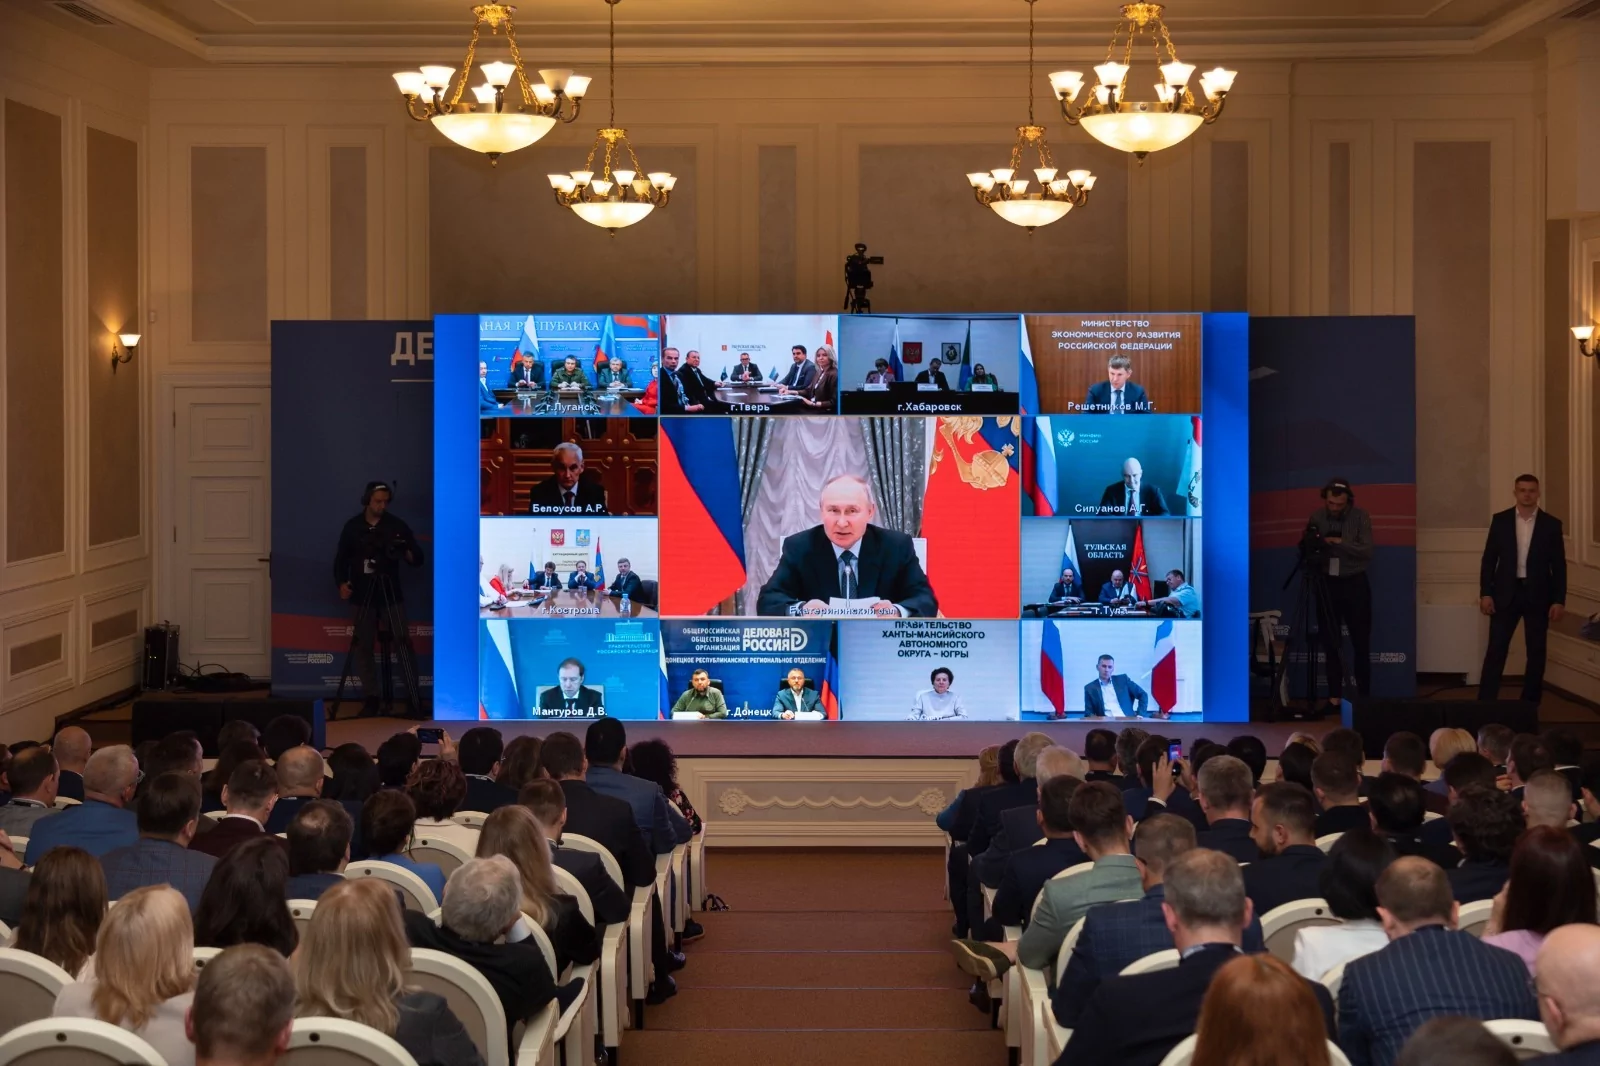 Президент России Владимир Путин поздравил делороссов с Днем российского предпринимательства на форуме организации